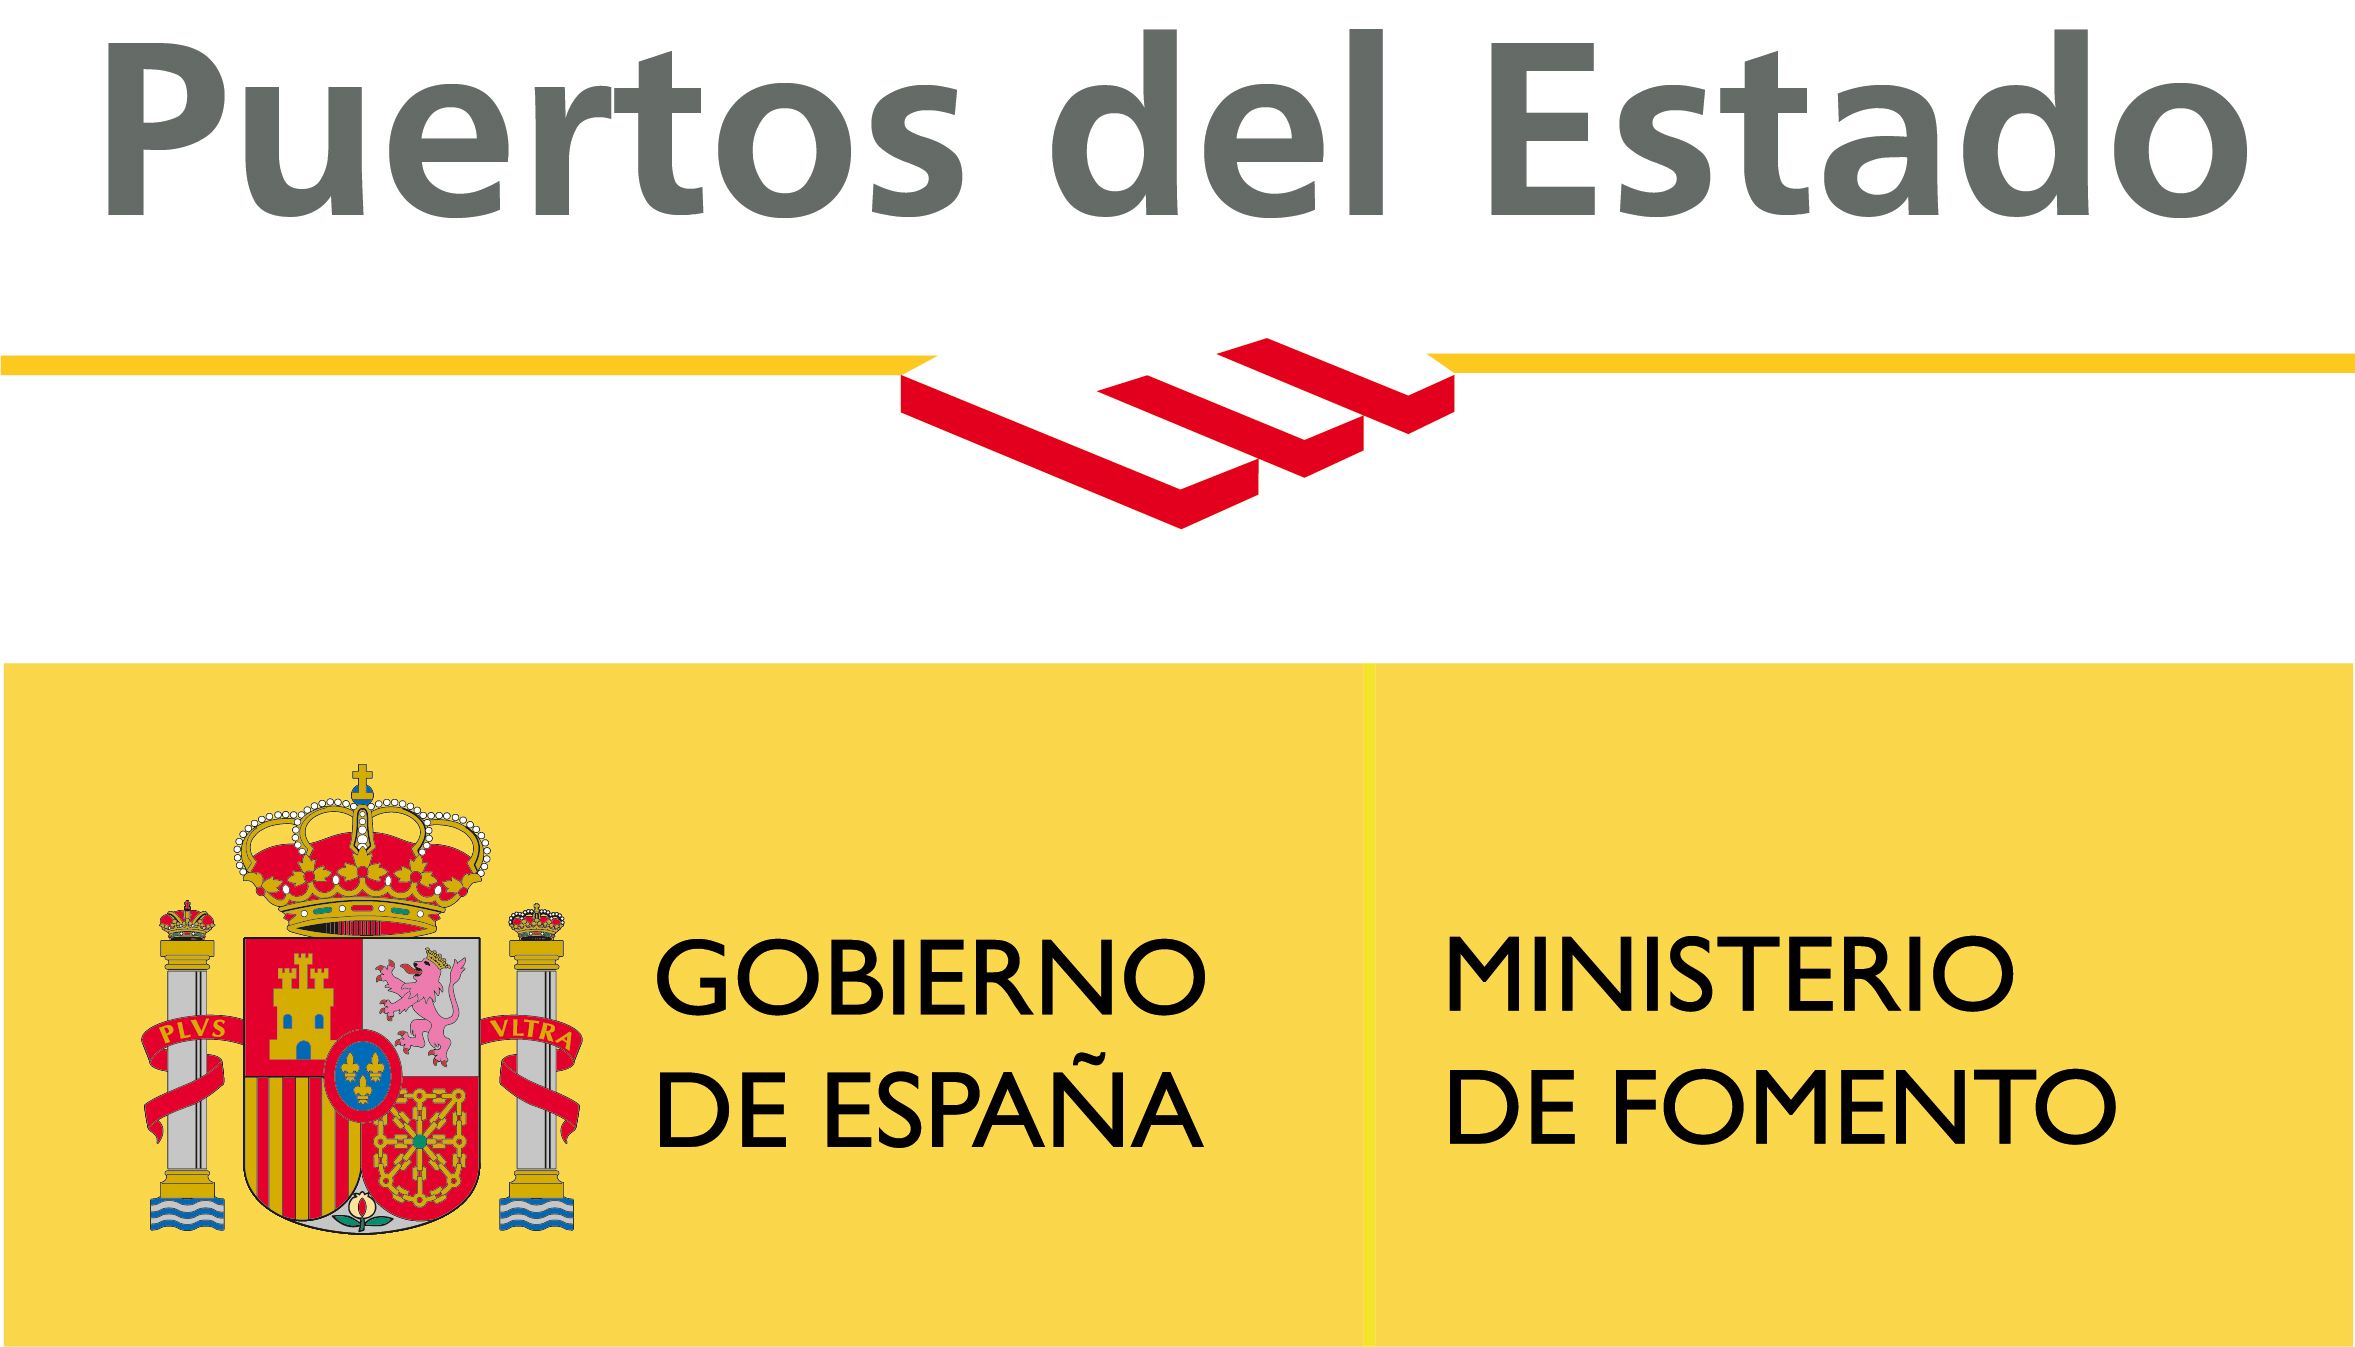 Logo-Puertos-del-Estado-2018-VerticalBIS